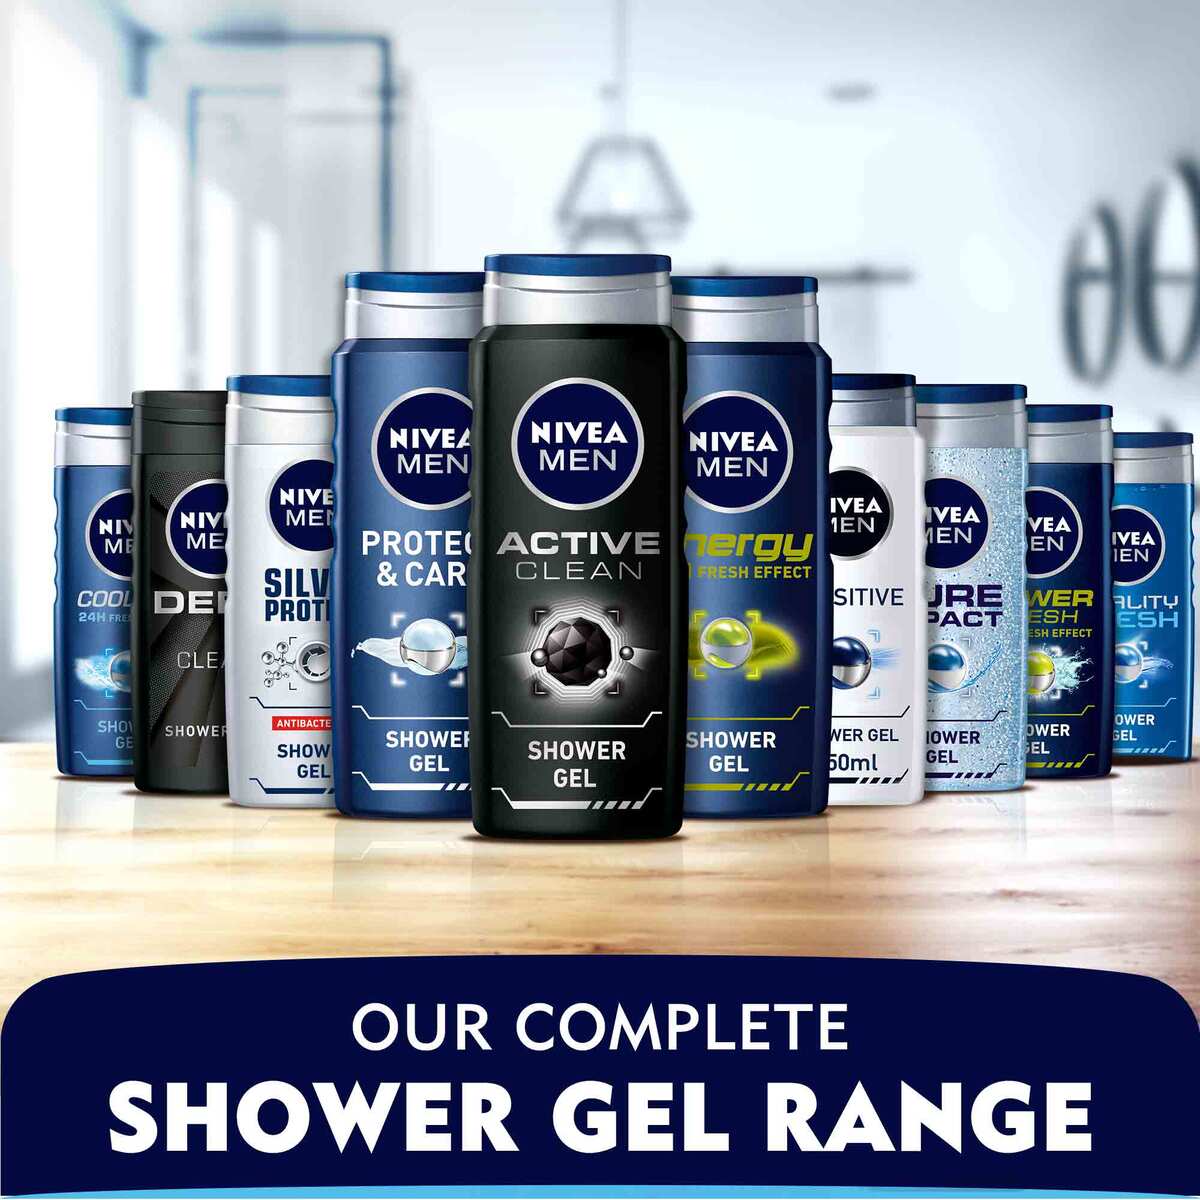 Nivea Shower Gel Silver Protect For Men 250 ml